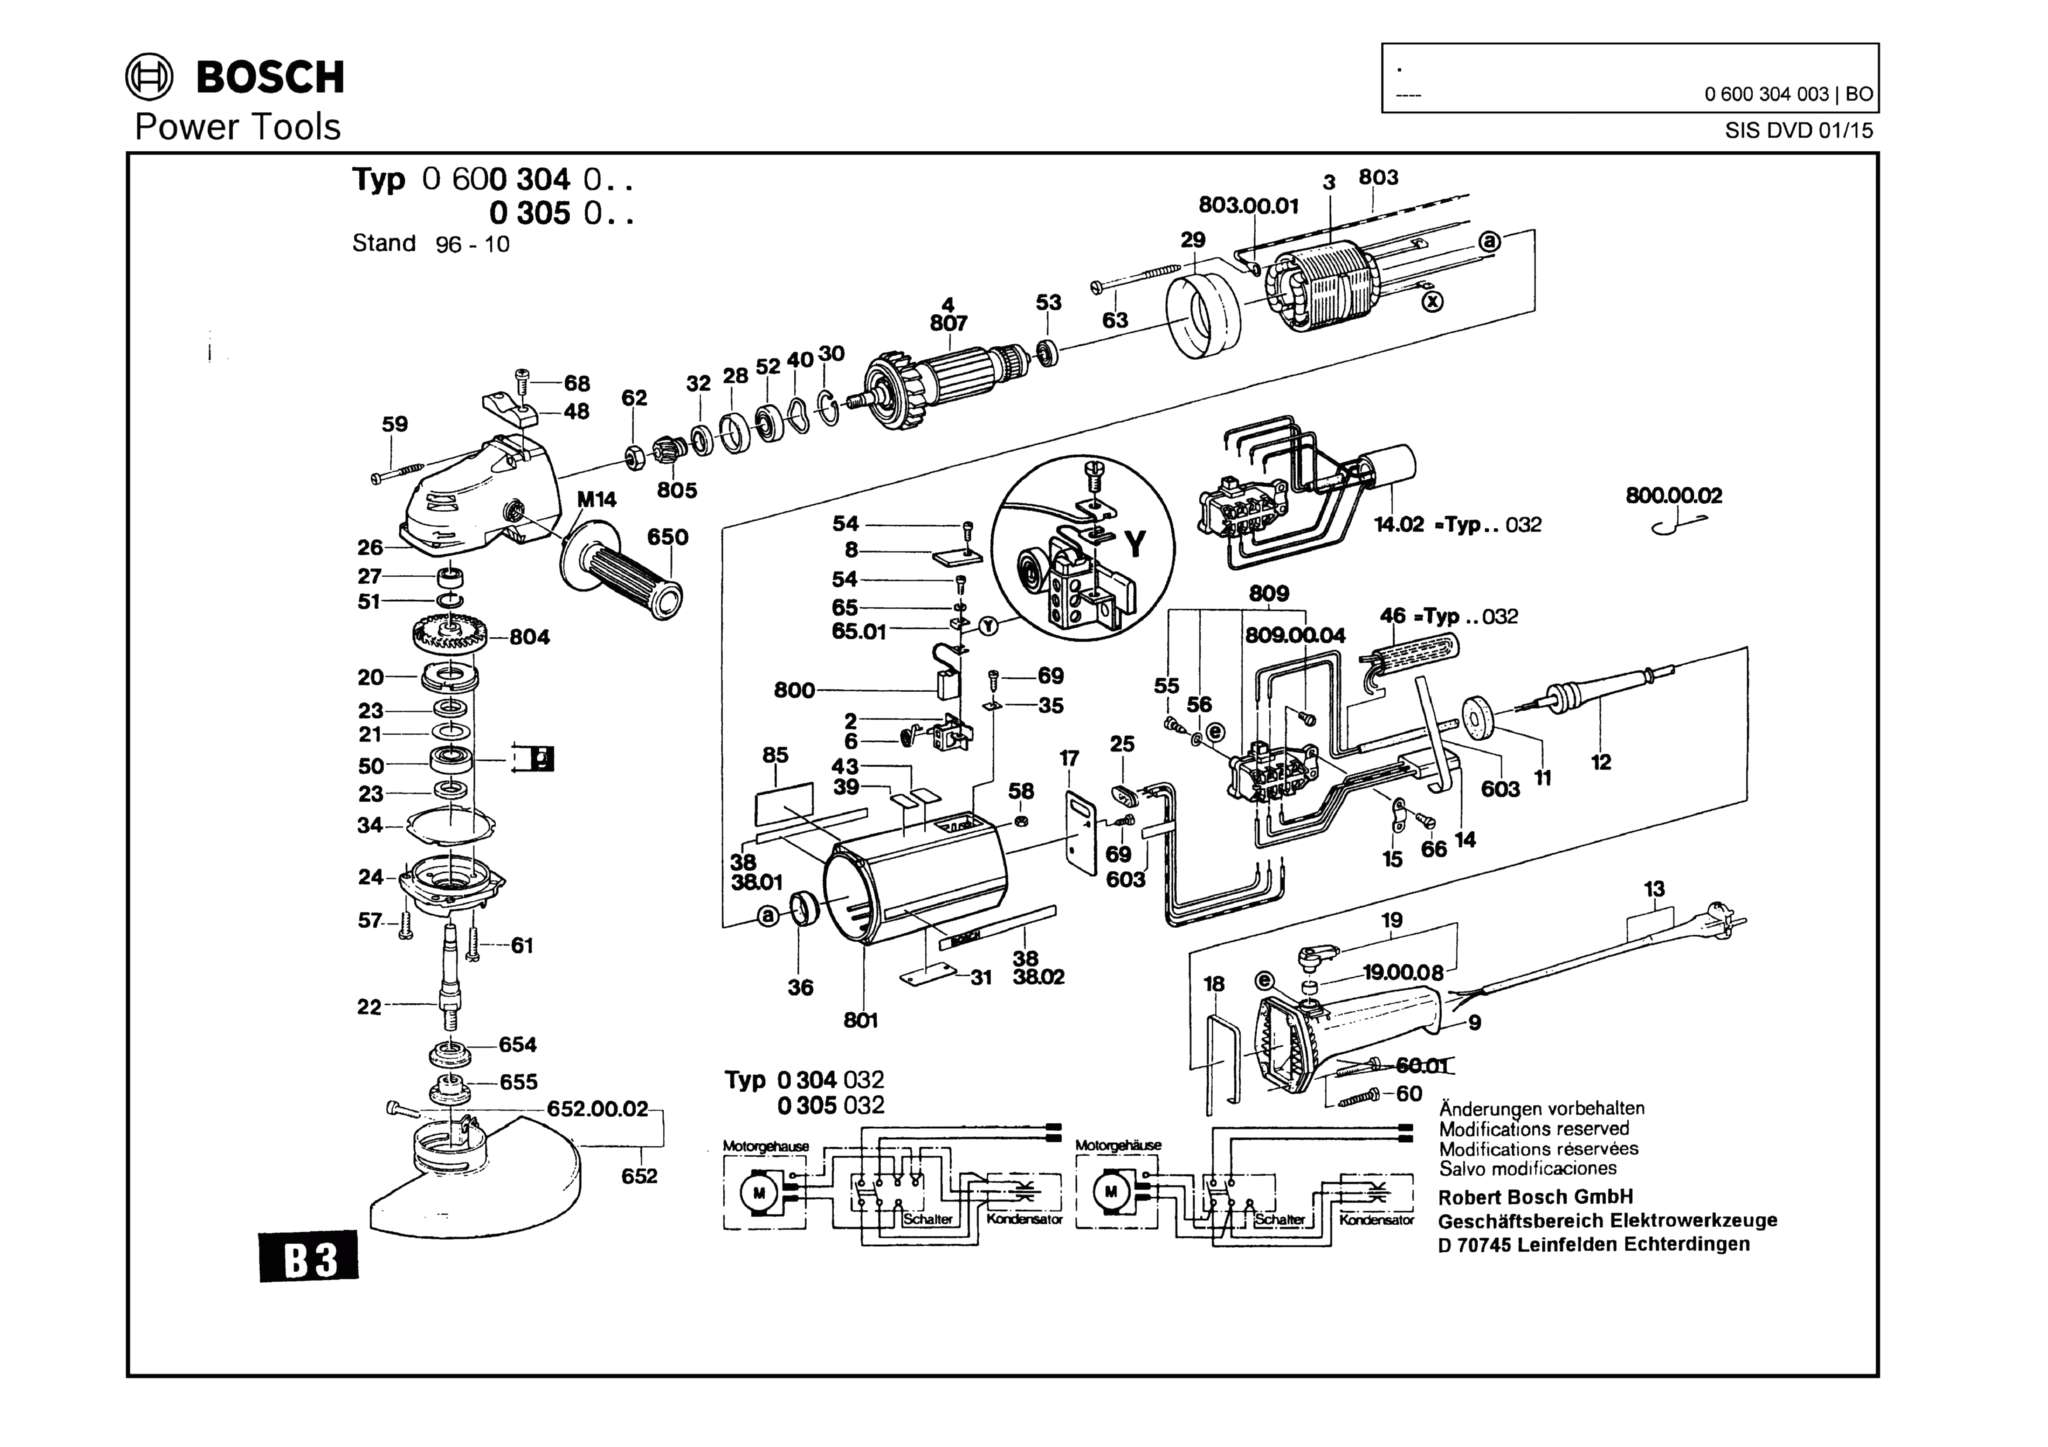 Запчасти, схема и деталировка Bosch (ТИП 0600304003)